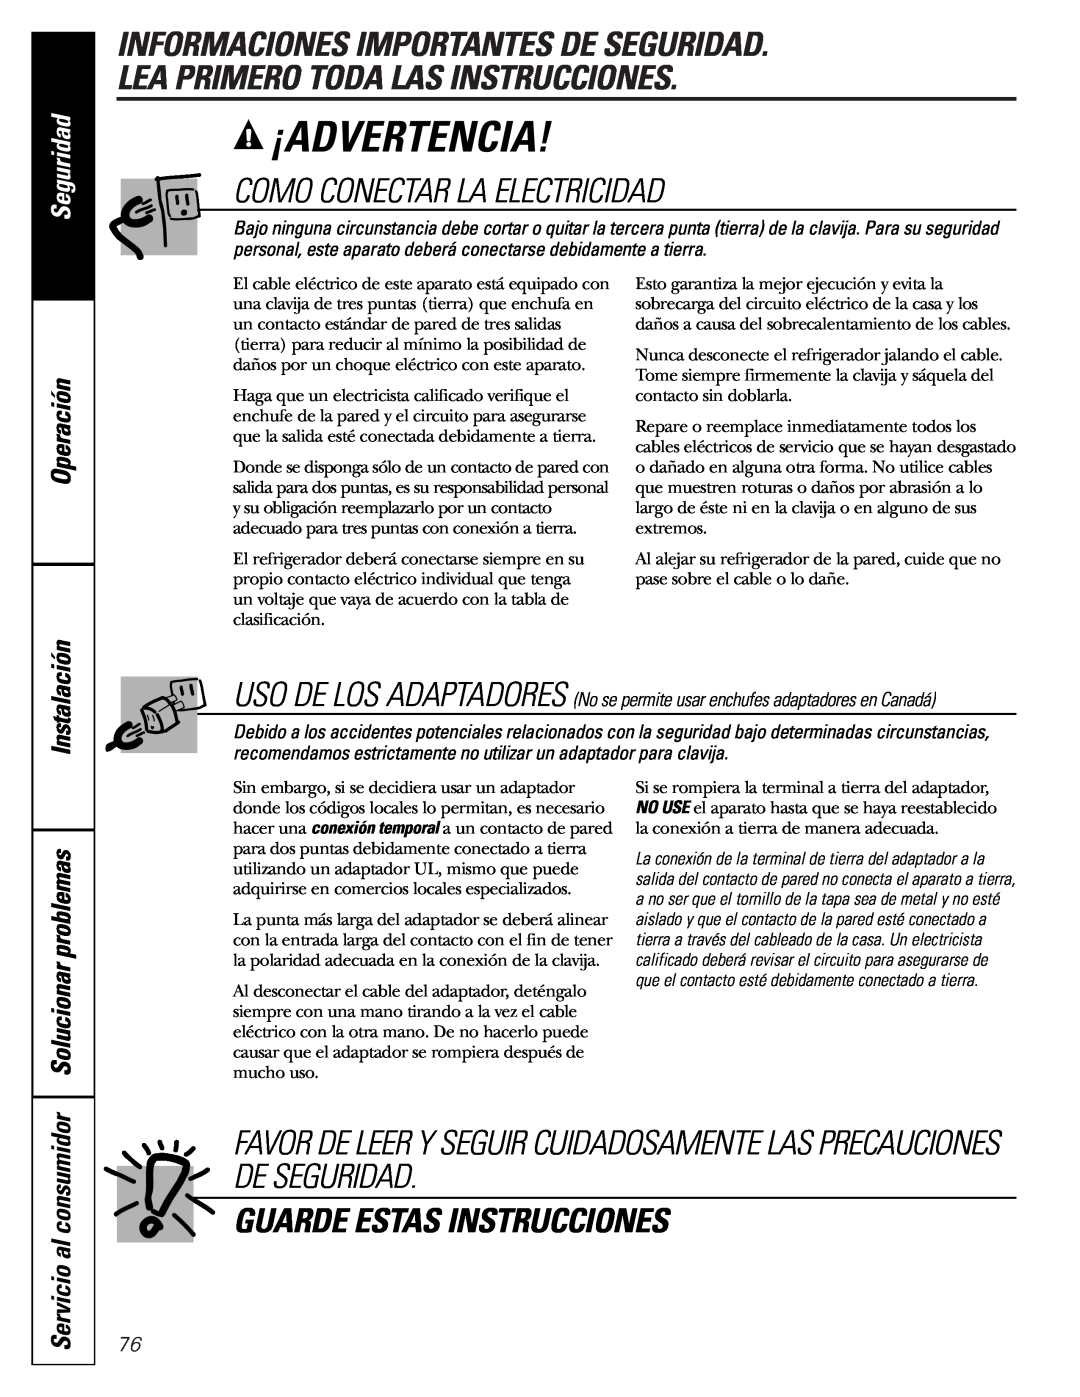 GE Monogram 23 Informaciones Importantes De Seguridad, Lea Primero Toda Las Instrucciones, Como Conectar La Electricidad 